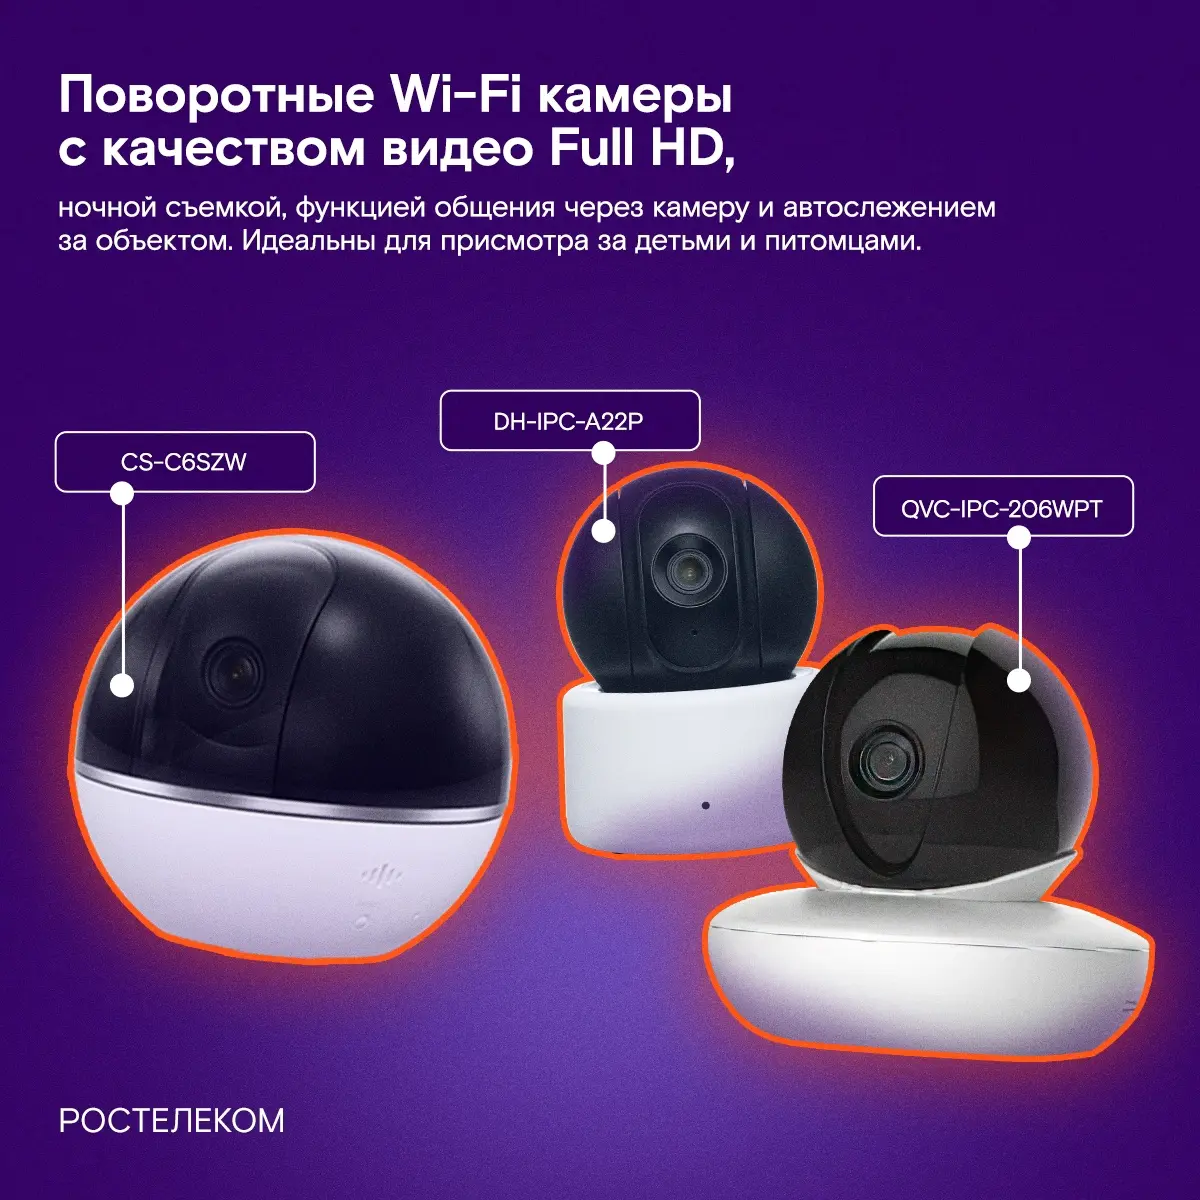 Wi-Fi камеры Ростелеком